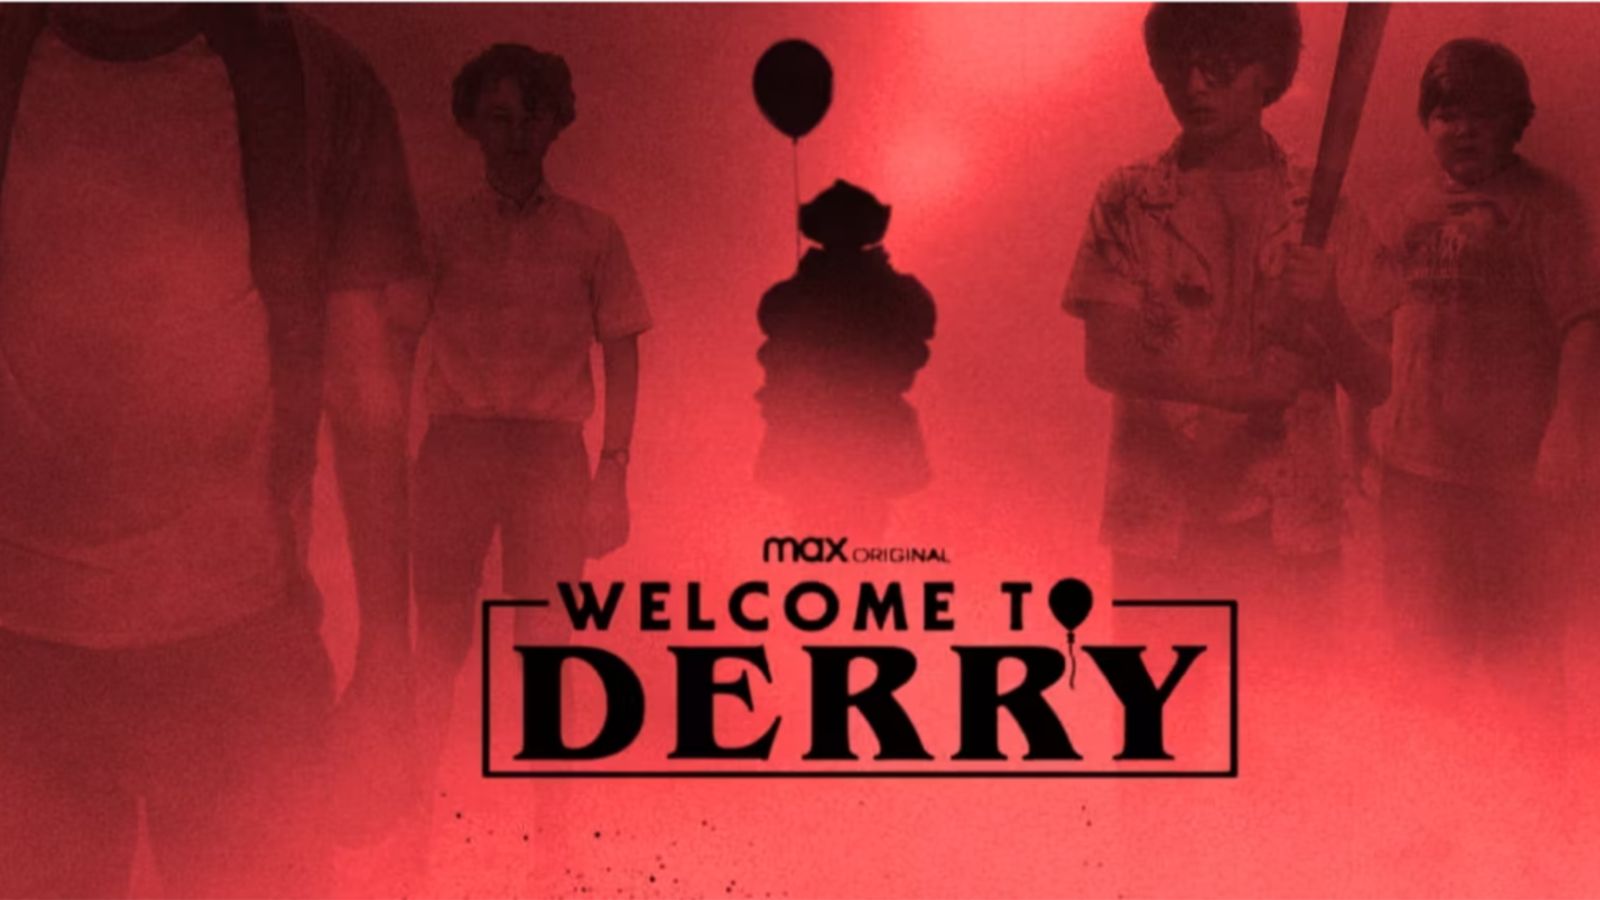 Welcome To Derry: prime immagini della serie prequel di It nel promo di Max